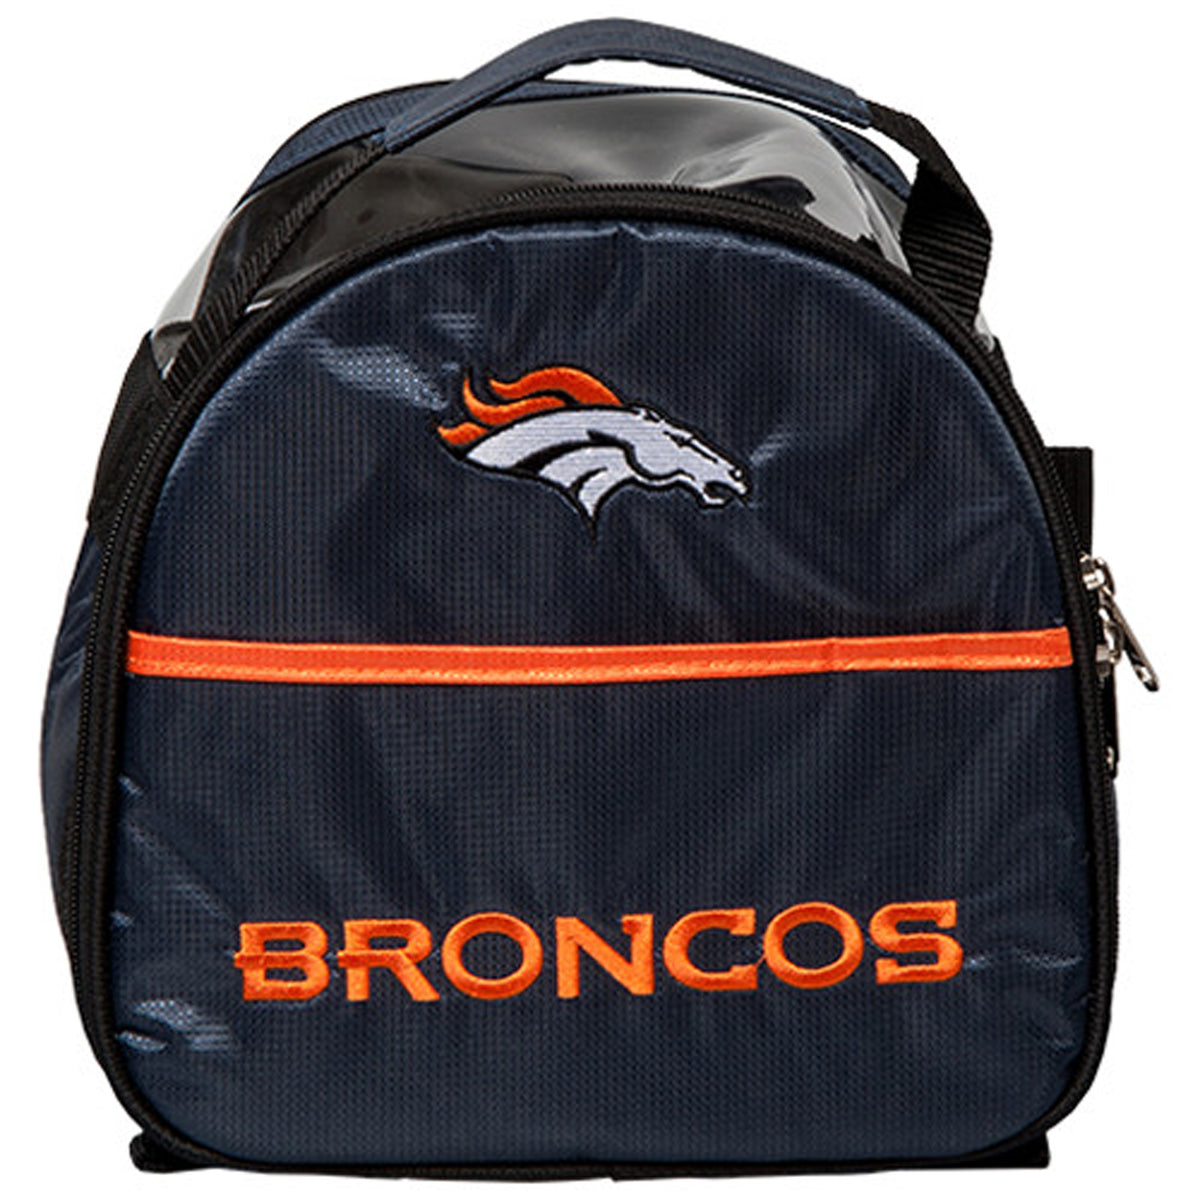 Denver Broncos Add On Bag